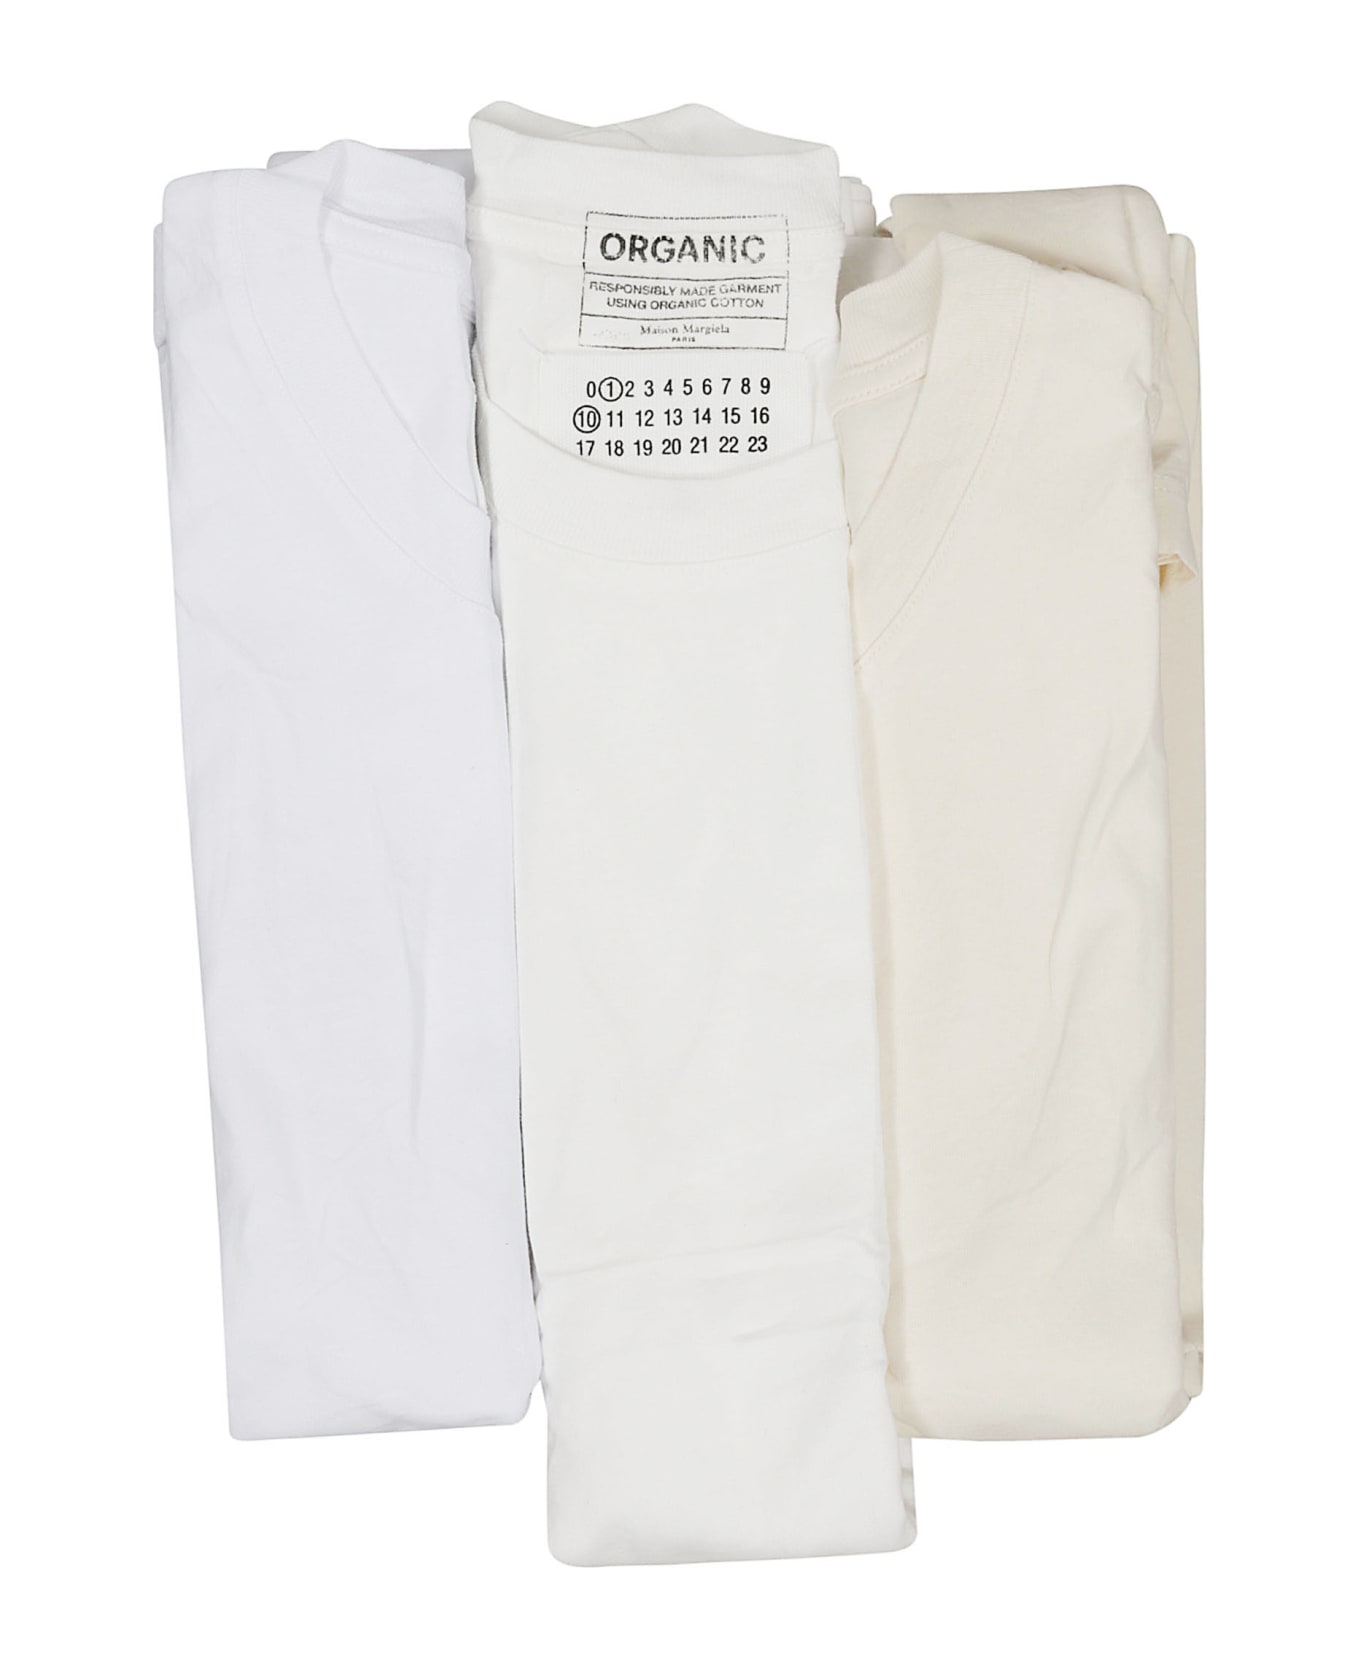 Maison Margiela Tri-pack T-shirt Set - SHADES OF WHITE (Beige) シャツ